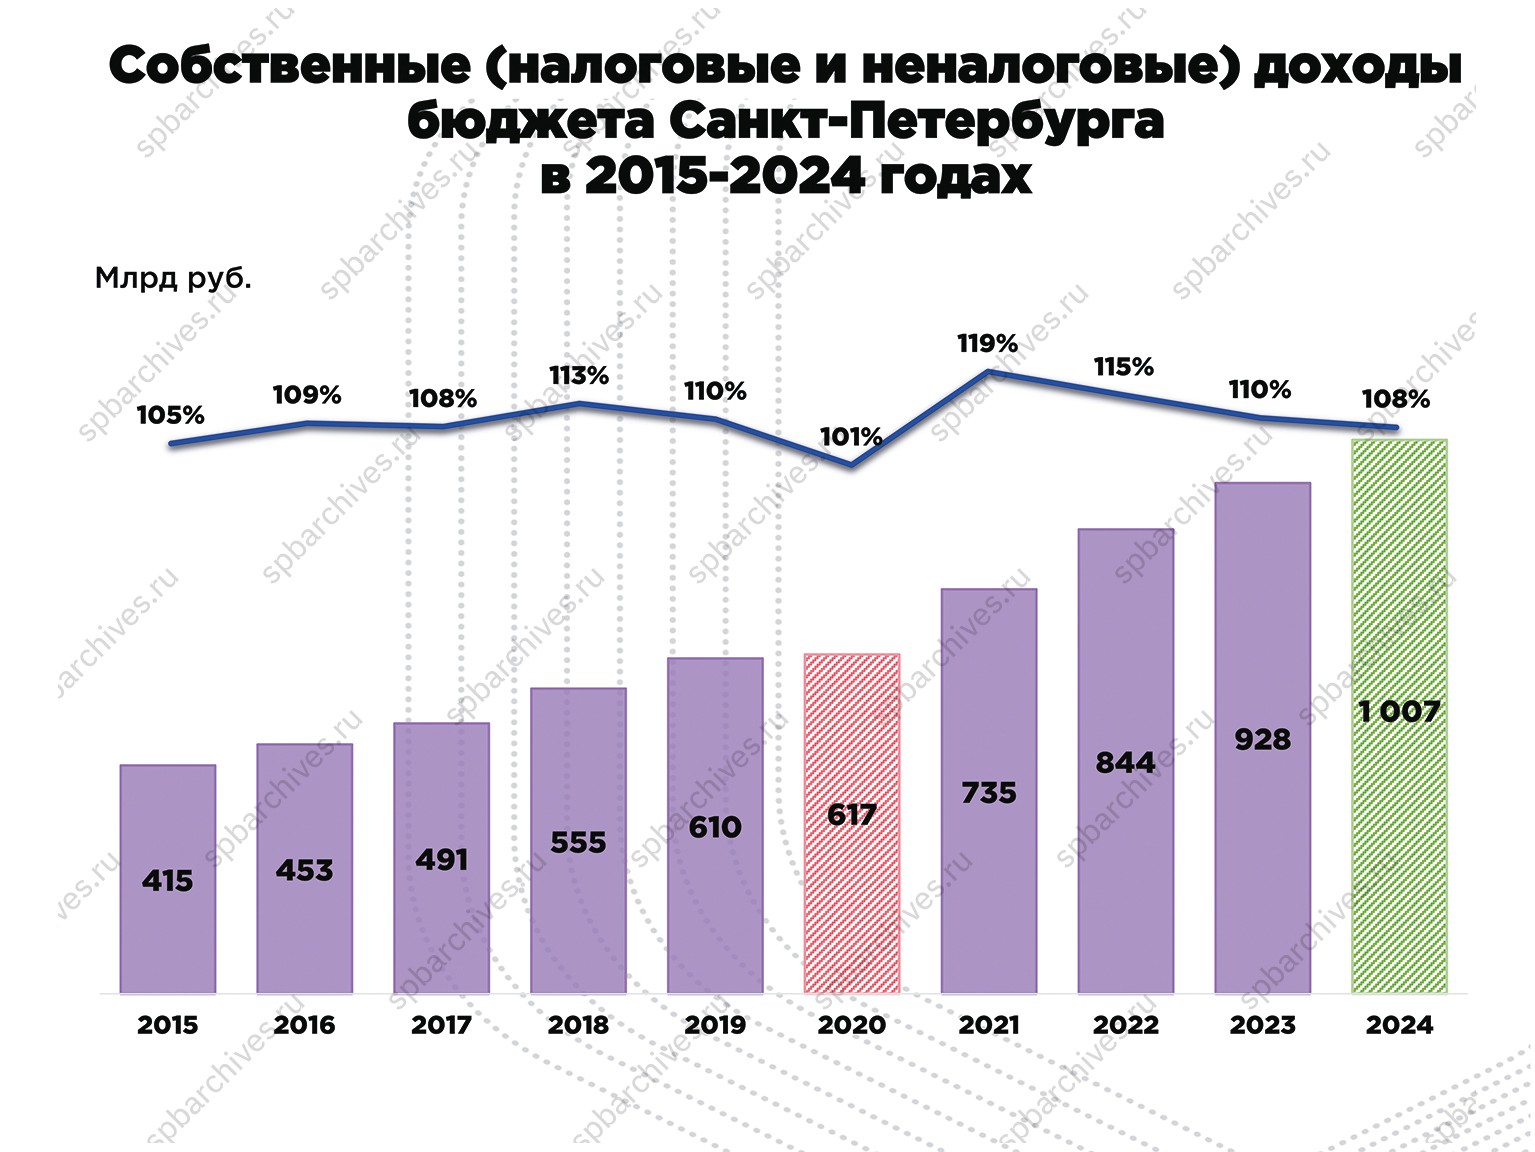 Собственные доходы бюджета<br />
Санкт-Петербурга в 2015–2024 гг.<br />
Санкт-Петербург. 2021 г.